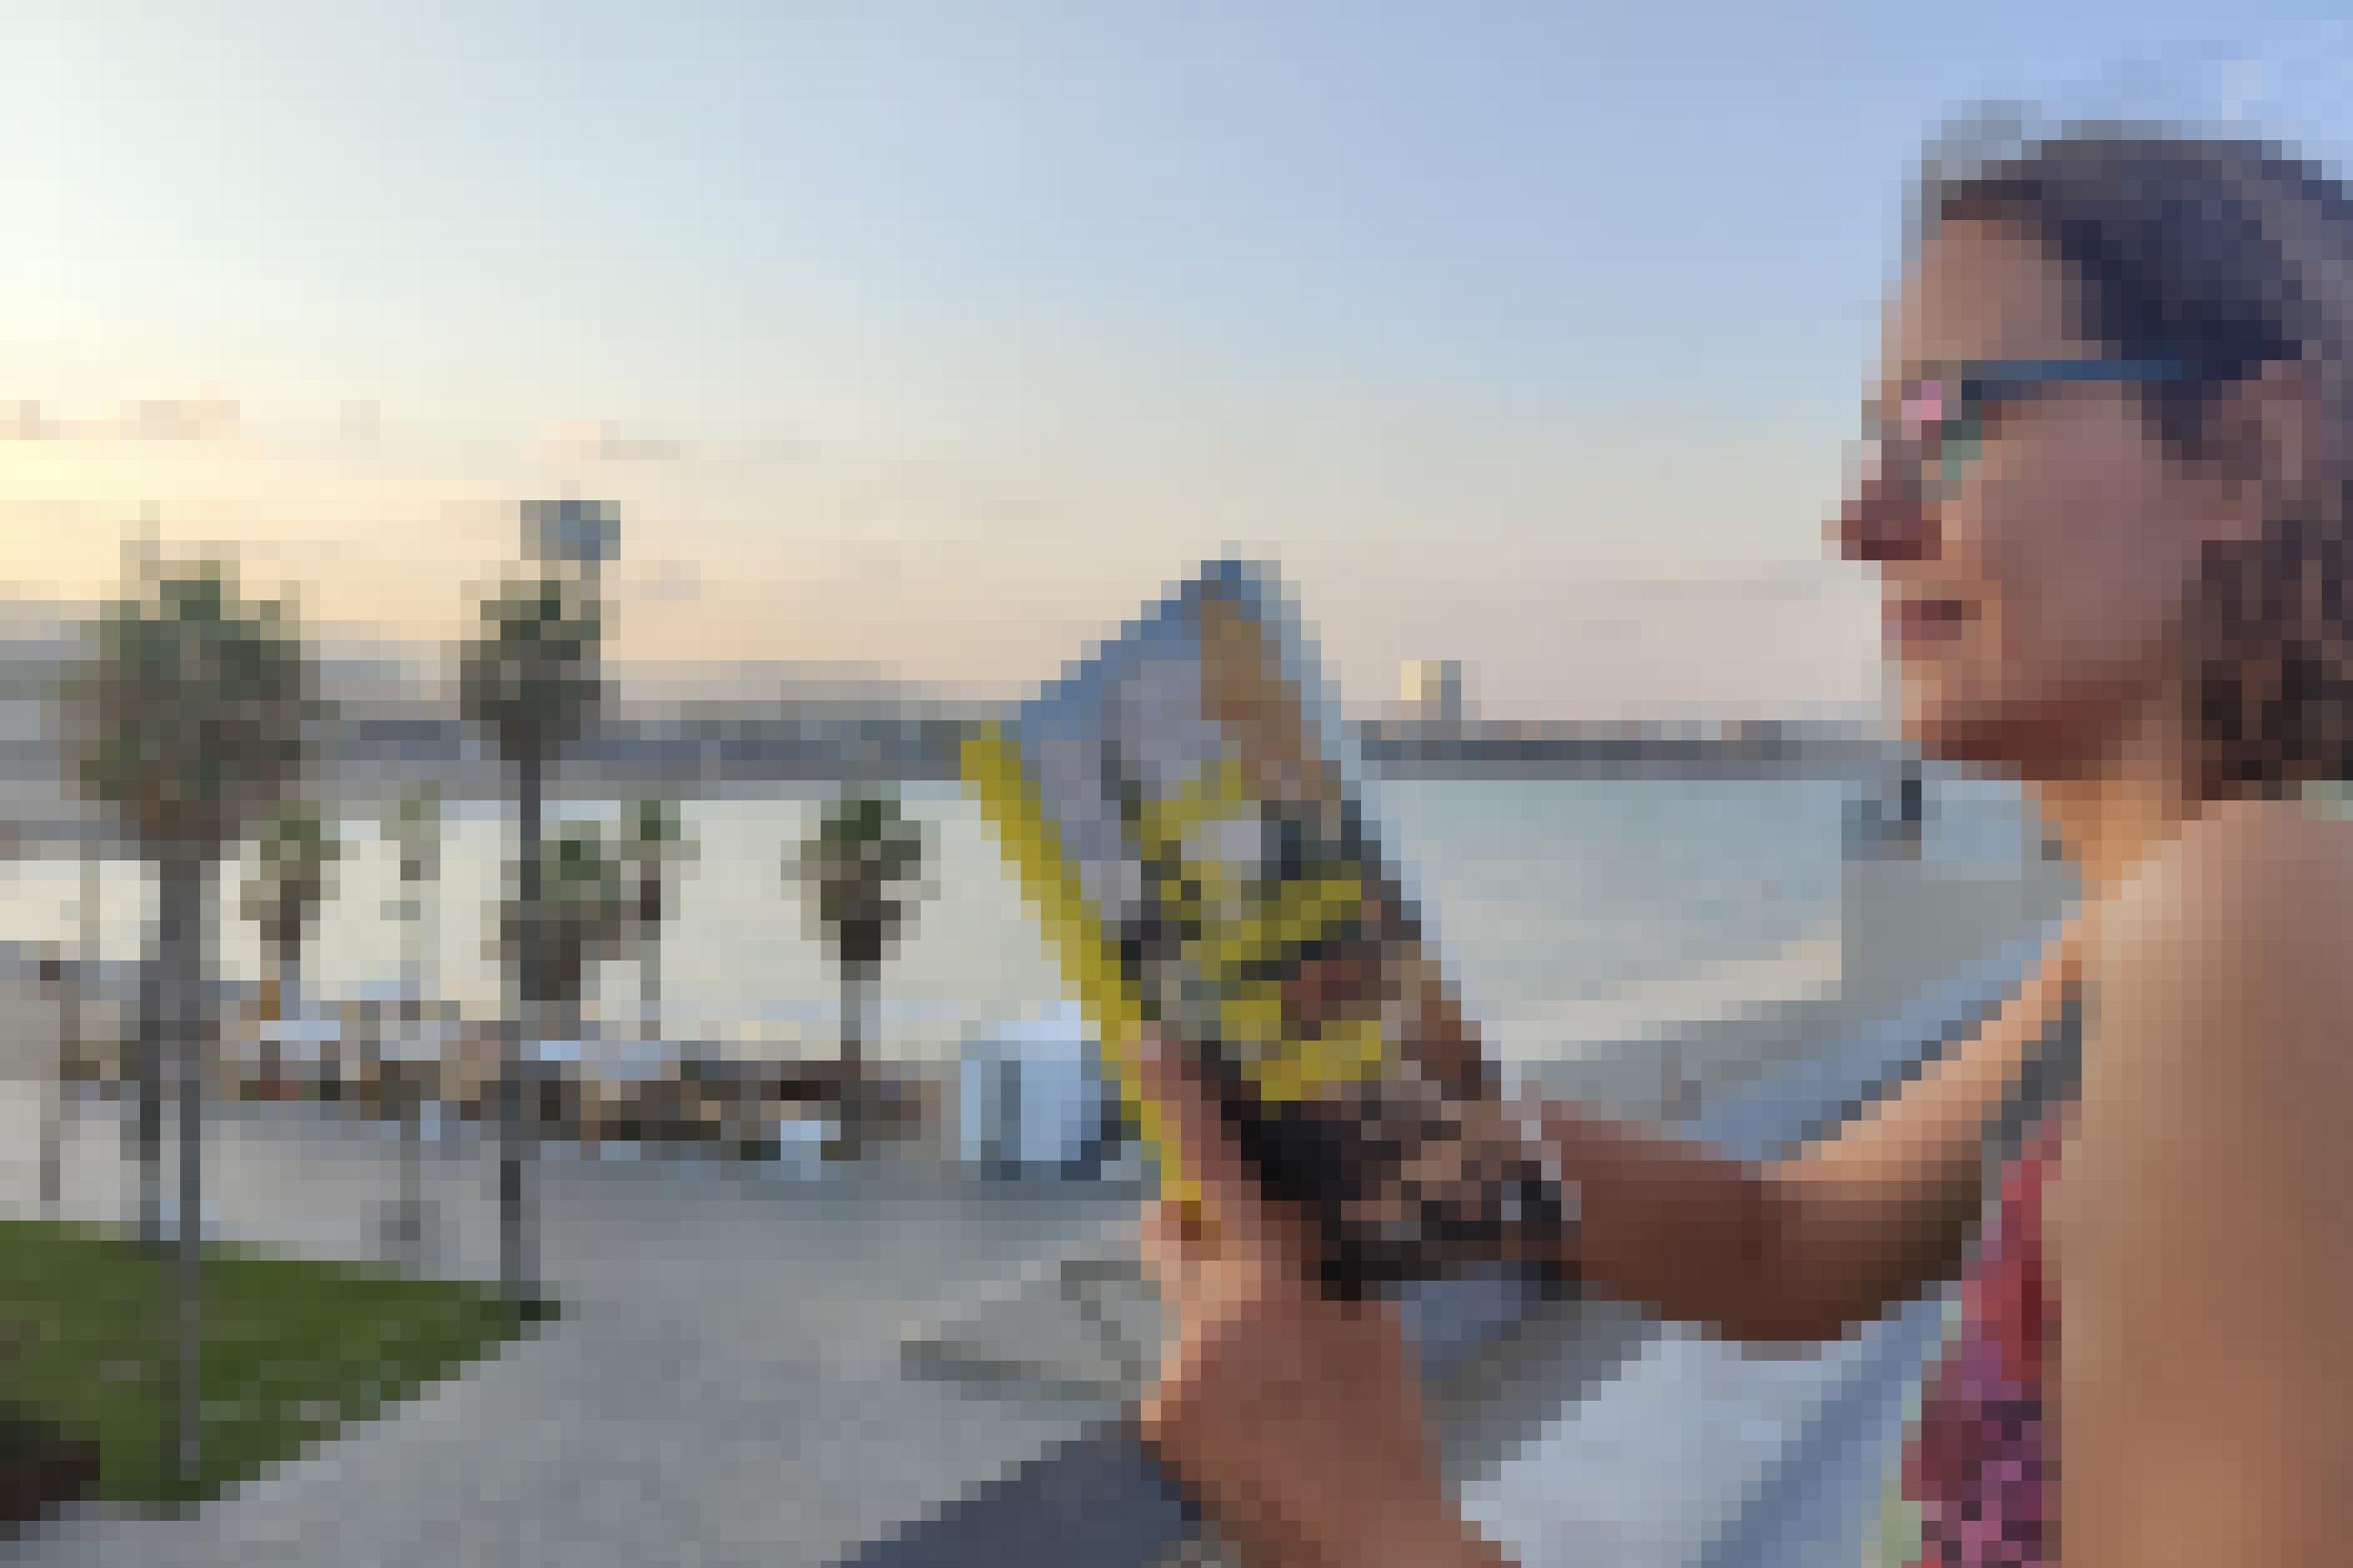 Julia Macher liest im Buch „Singe ich, tanzen die Berge“ von Irene Solà, im Hintergrund ist der Strand von Barcelona zu sehen.